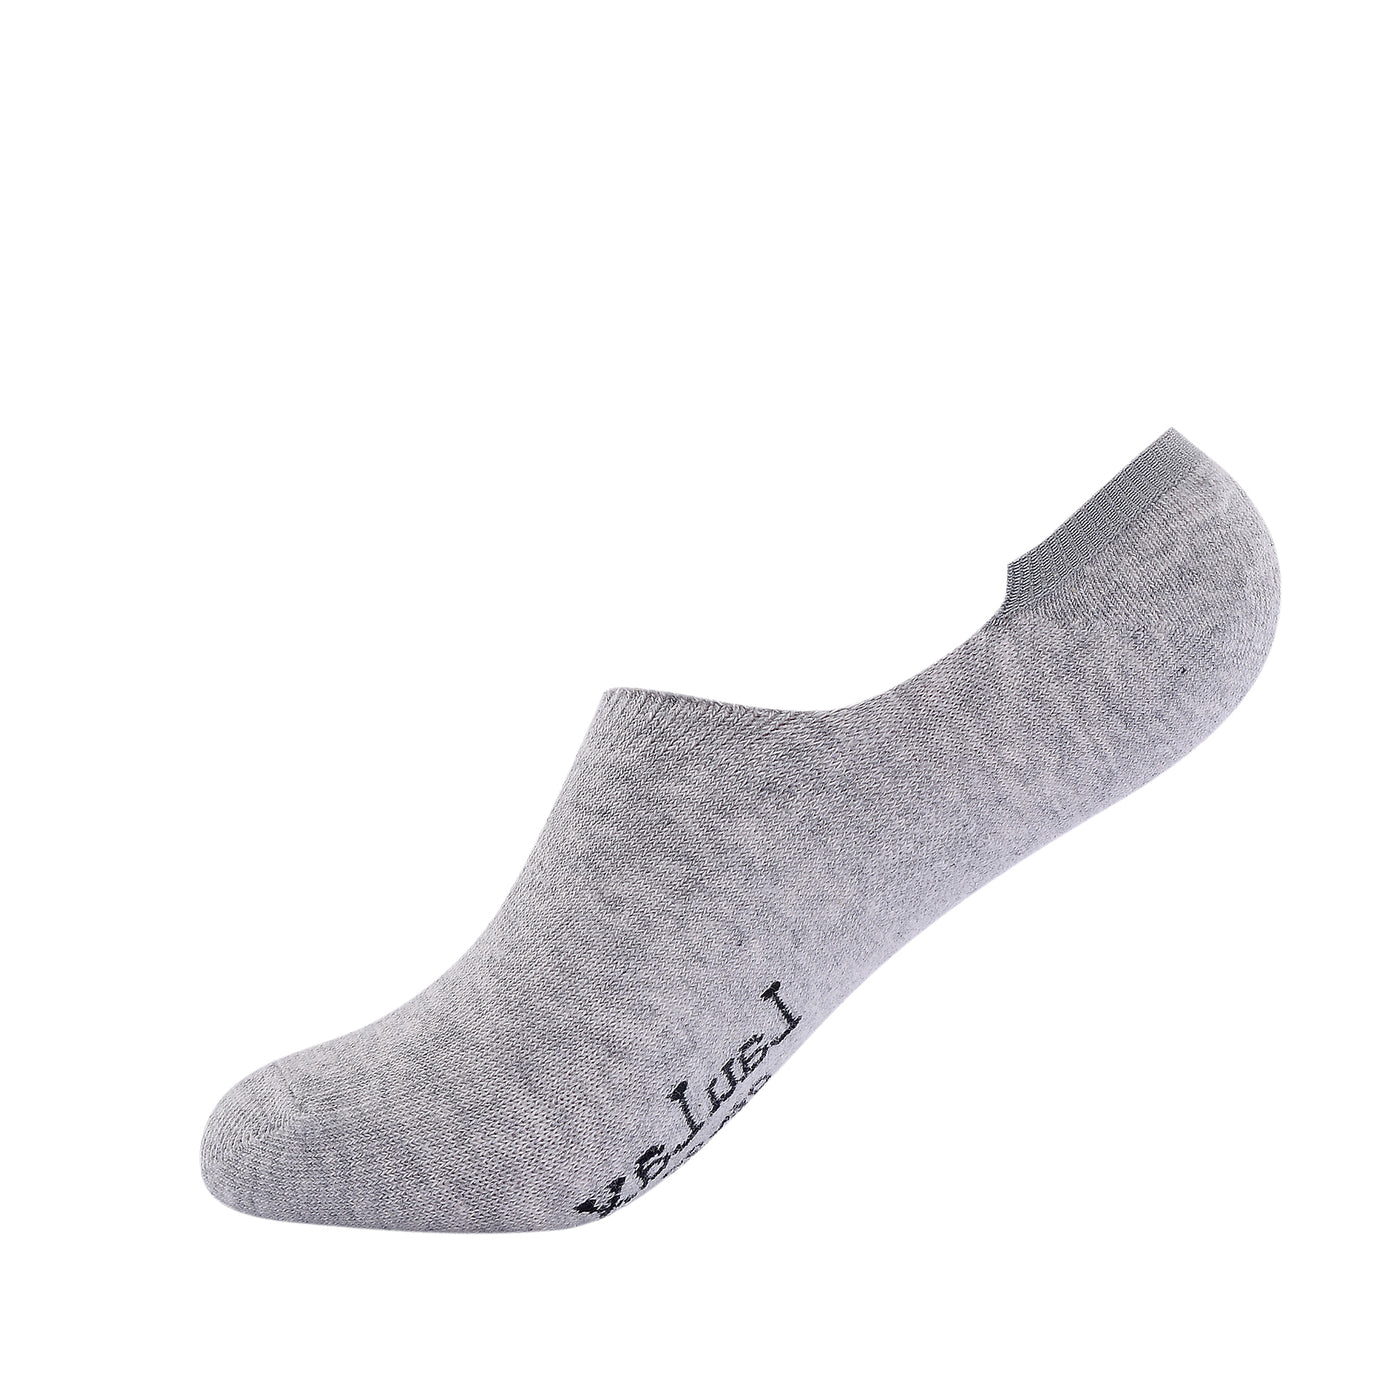 Laulax 2 paires de chaussettes invisibles en coton peigné fin uni - gris